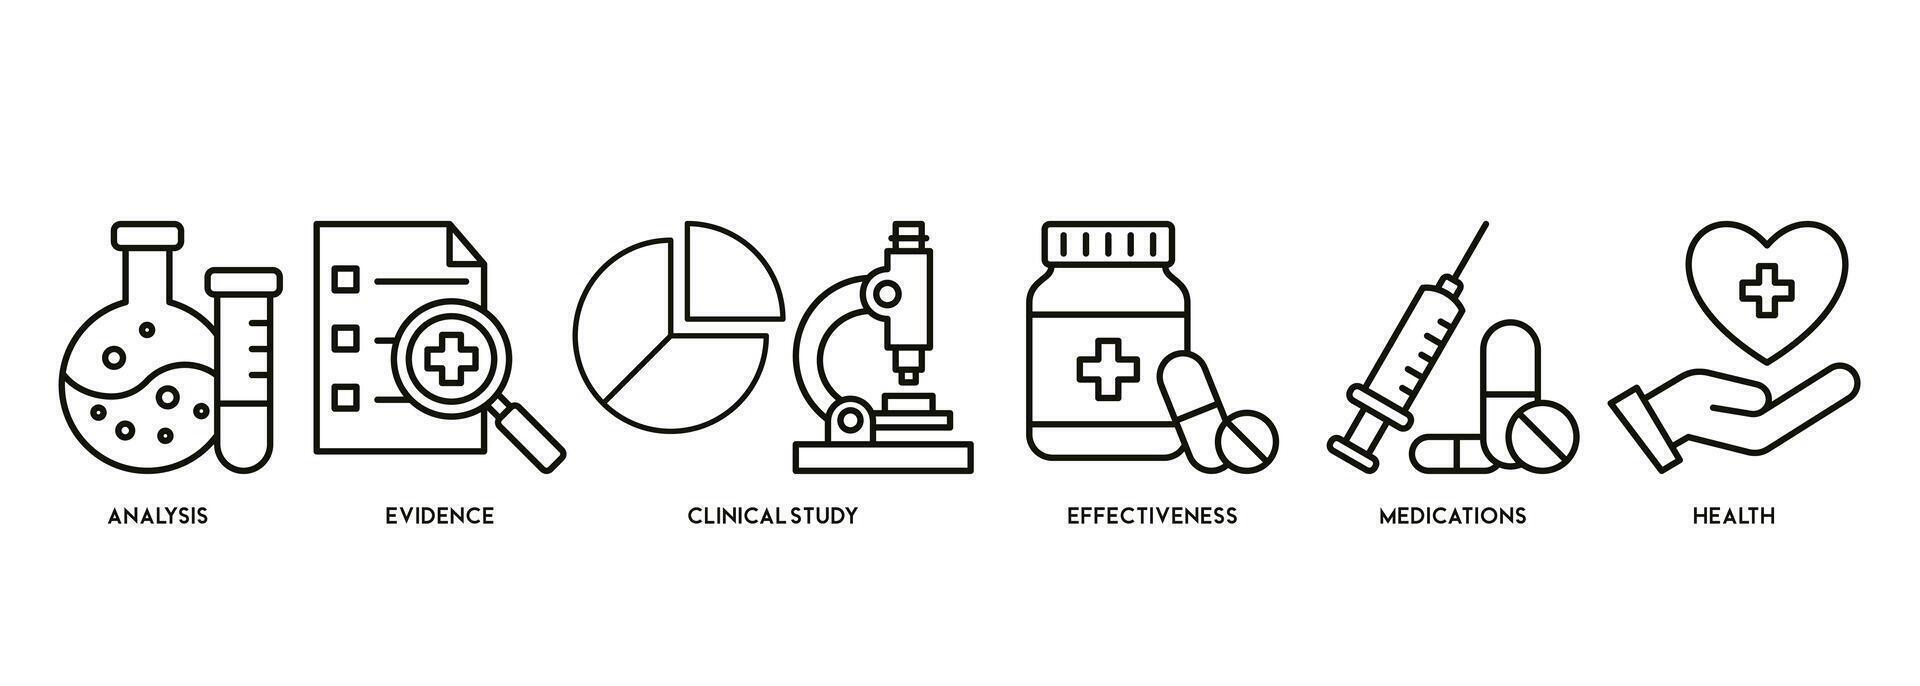 bandera de clínico investigación vector ilustración concepto pictograma con el icono de análisis, evidencia, clínico estudiar, eficacia, medicación